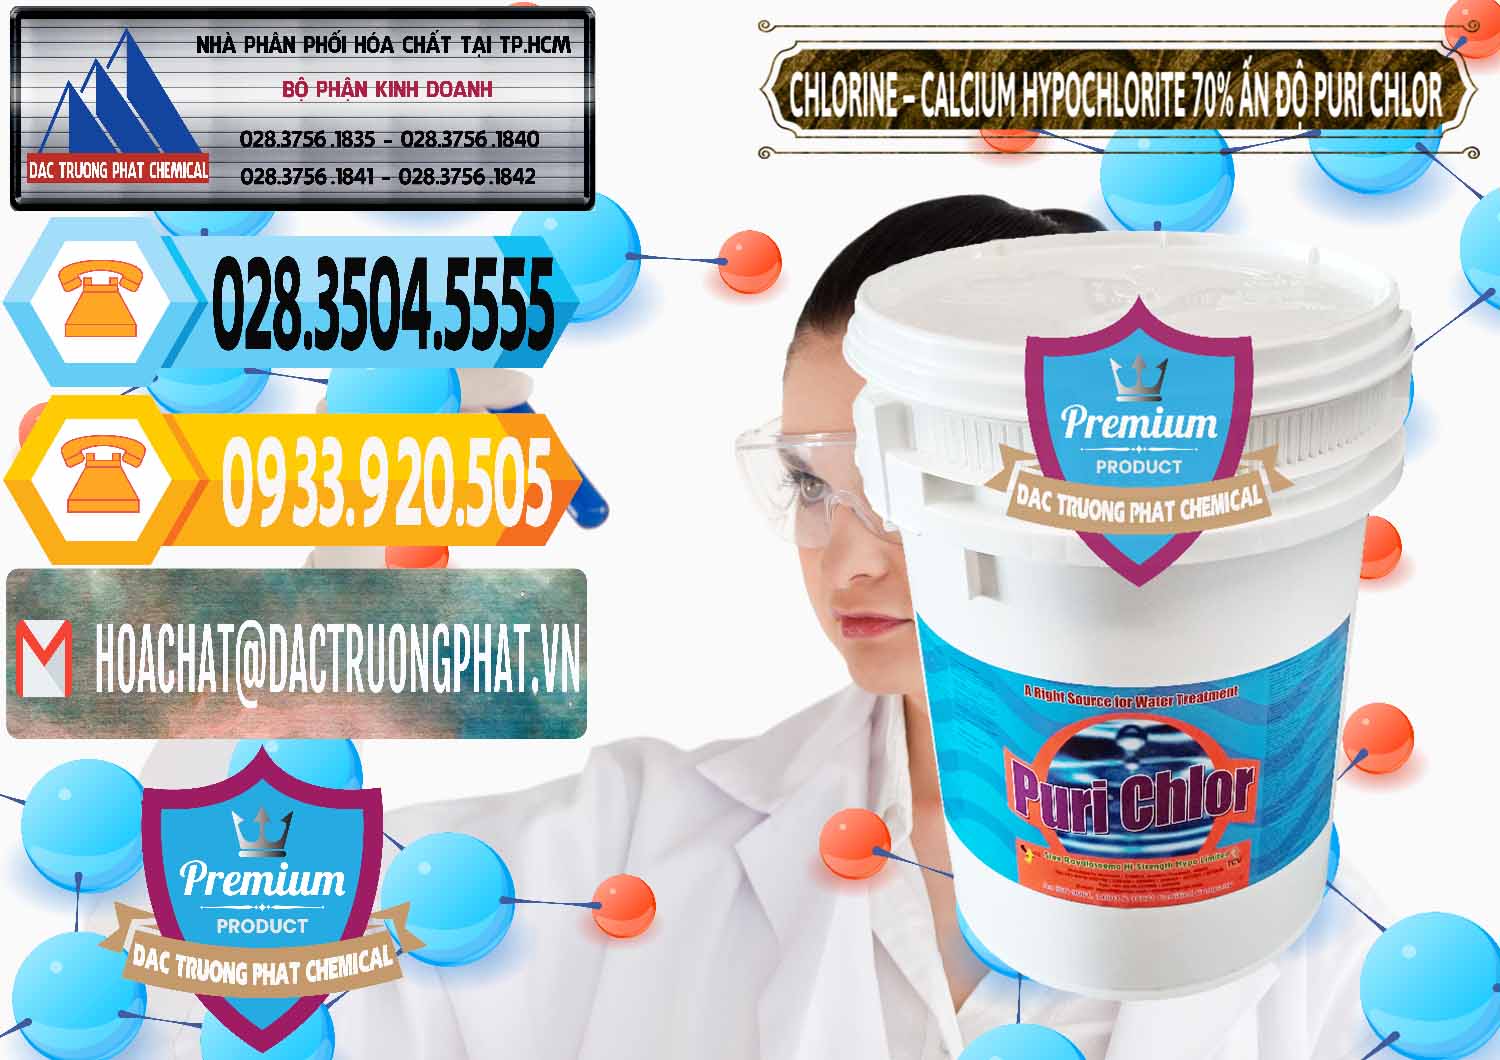 Đơn vị bán _ cung cấp Chlorine – Clorin 70% Puri Chlo Ấn Độ India - 0123 - Đơn vị chuyên nhập khẩu _ cung cấp hóa chất tại TP.HCM - hoachattayrua.net